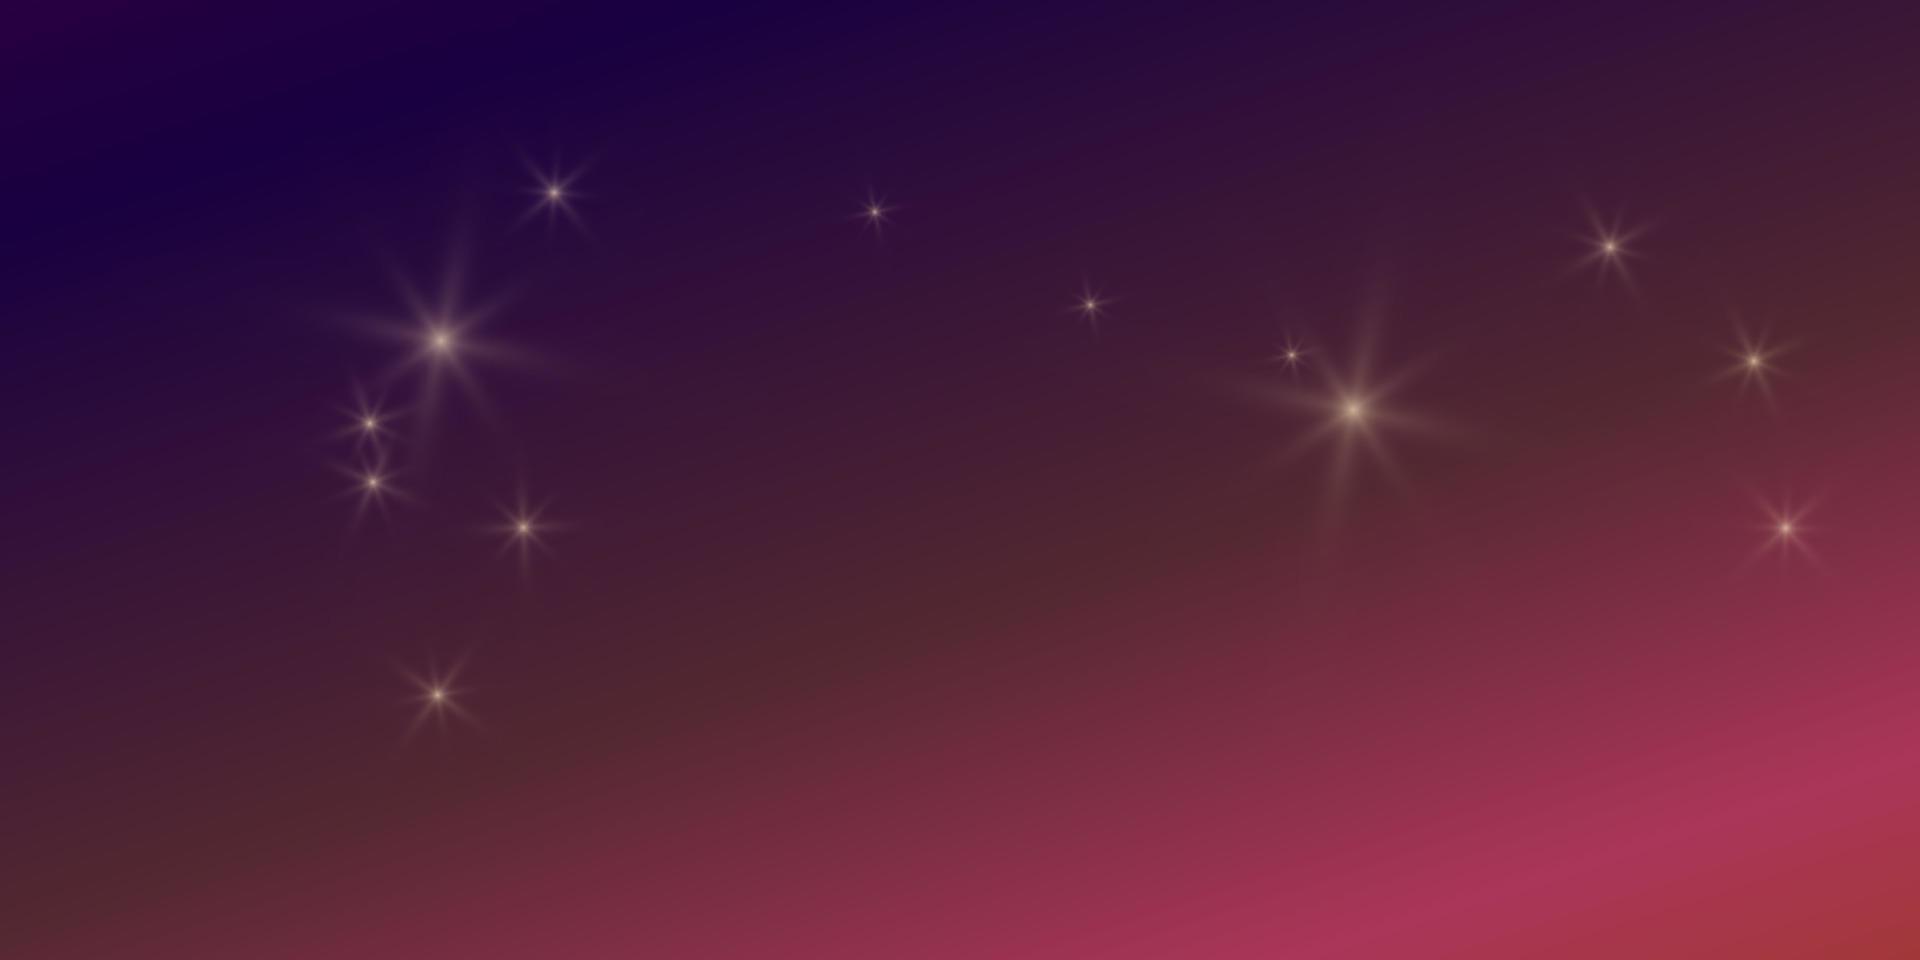 kleurovergang kleurrijke heldere achtergrond met sterren flare schittering lichten. vector illustratie horizontaal formaat